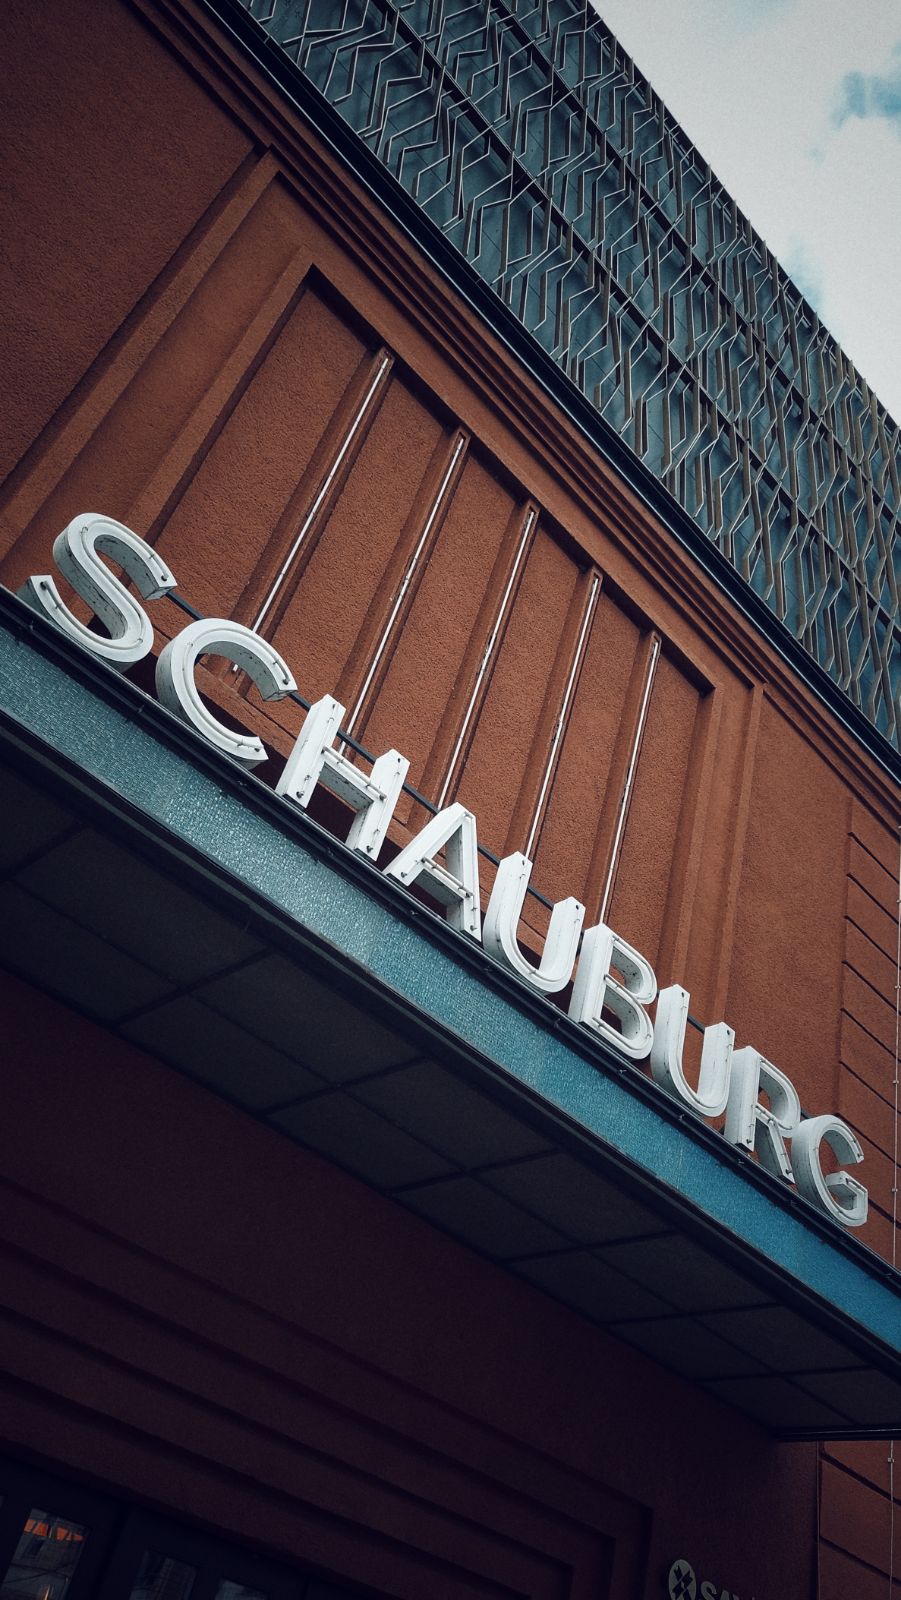 Facade of the Schauburg movie theatre, Dresden. 